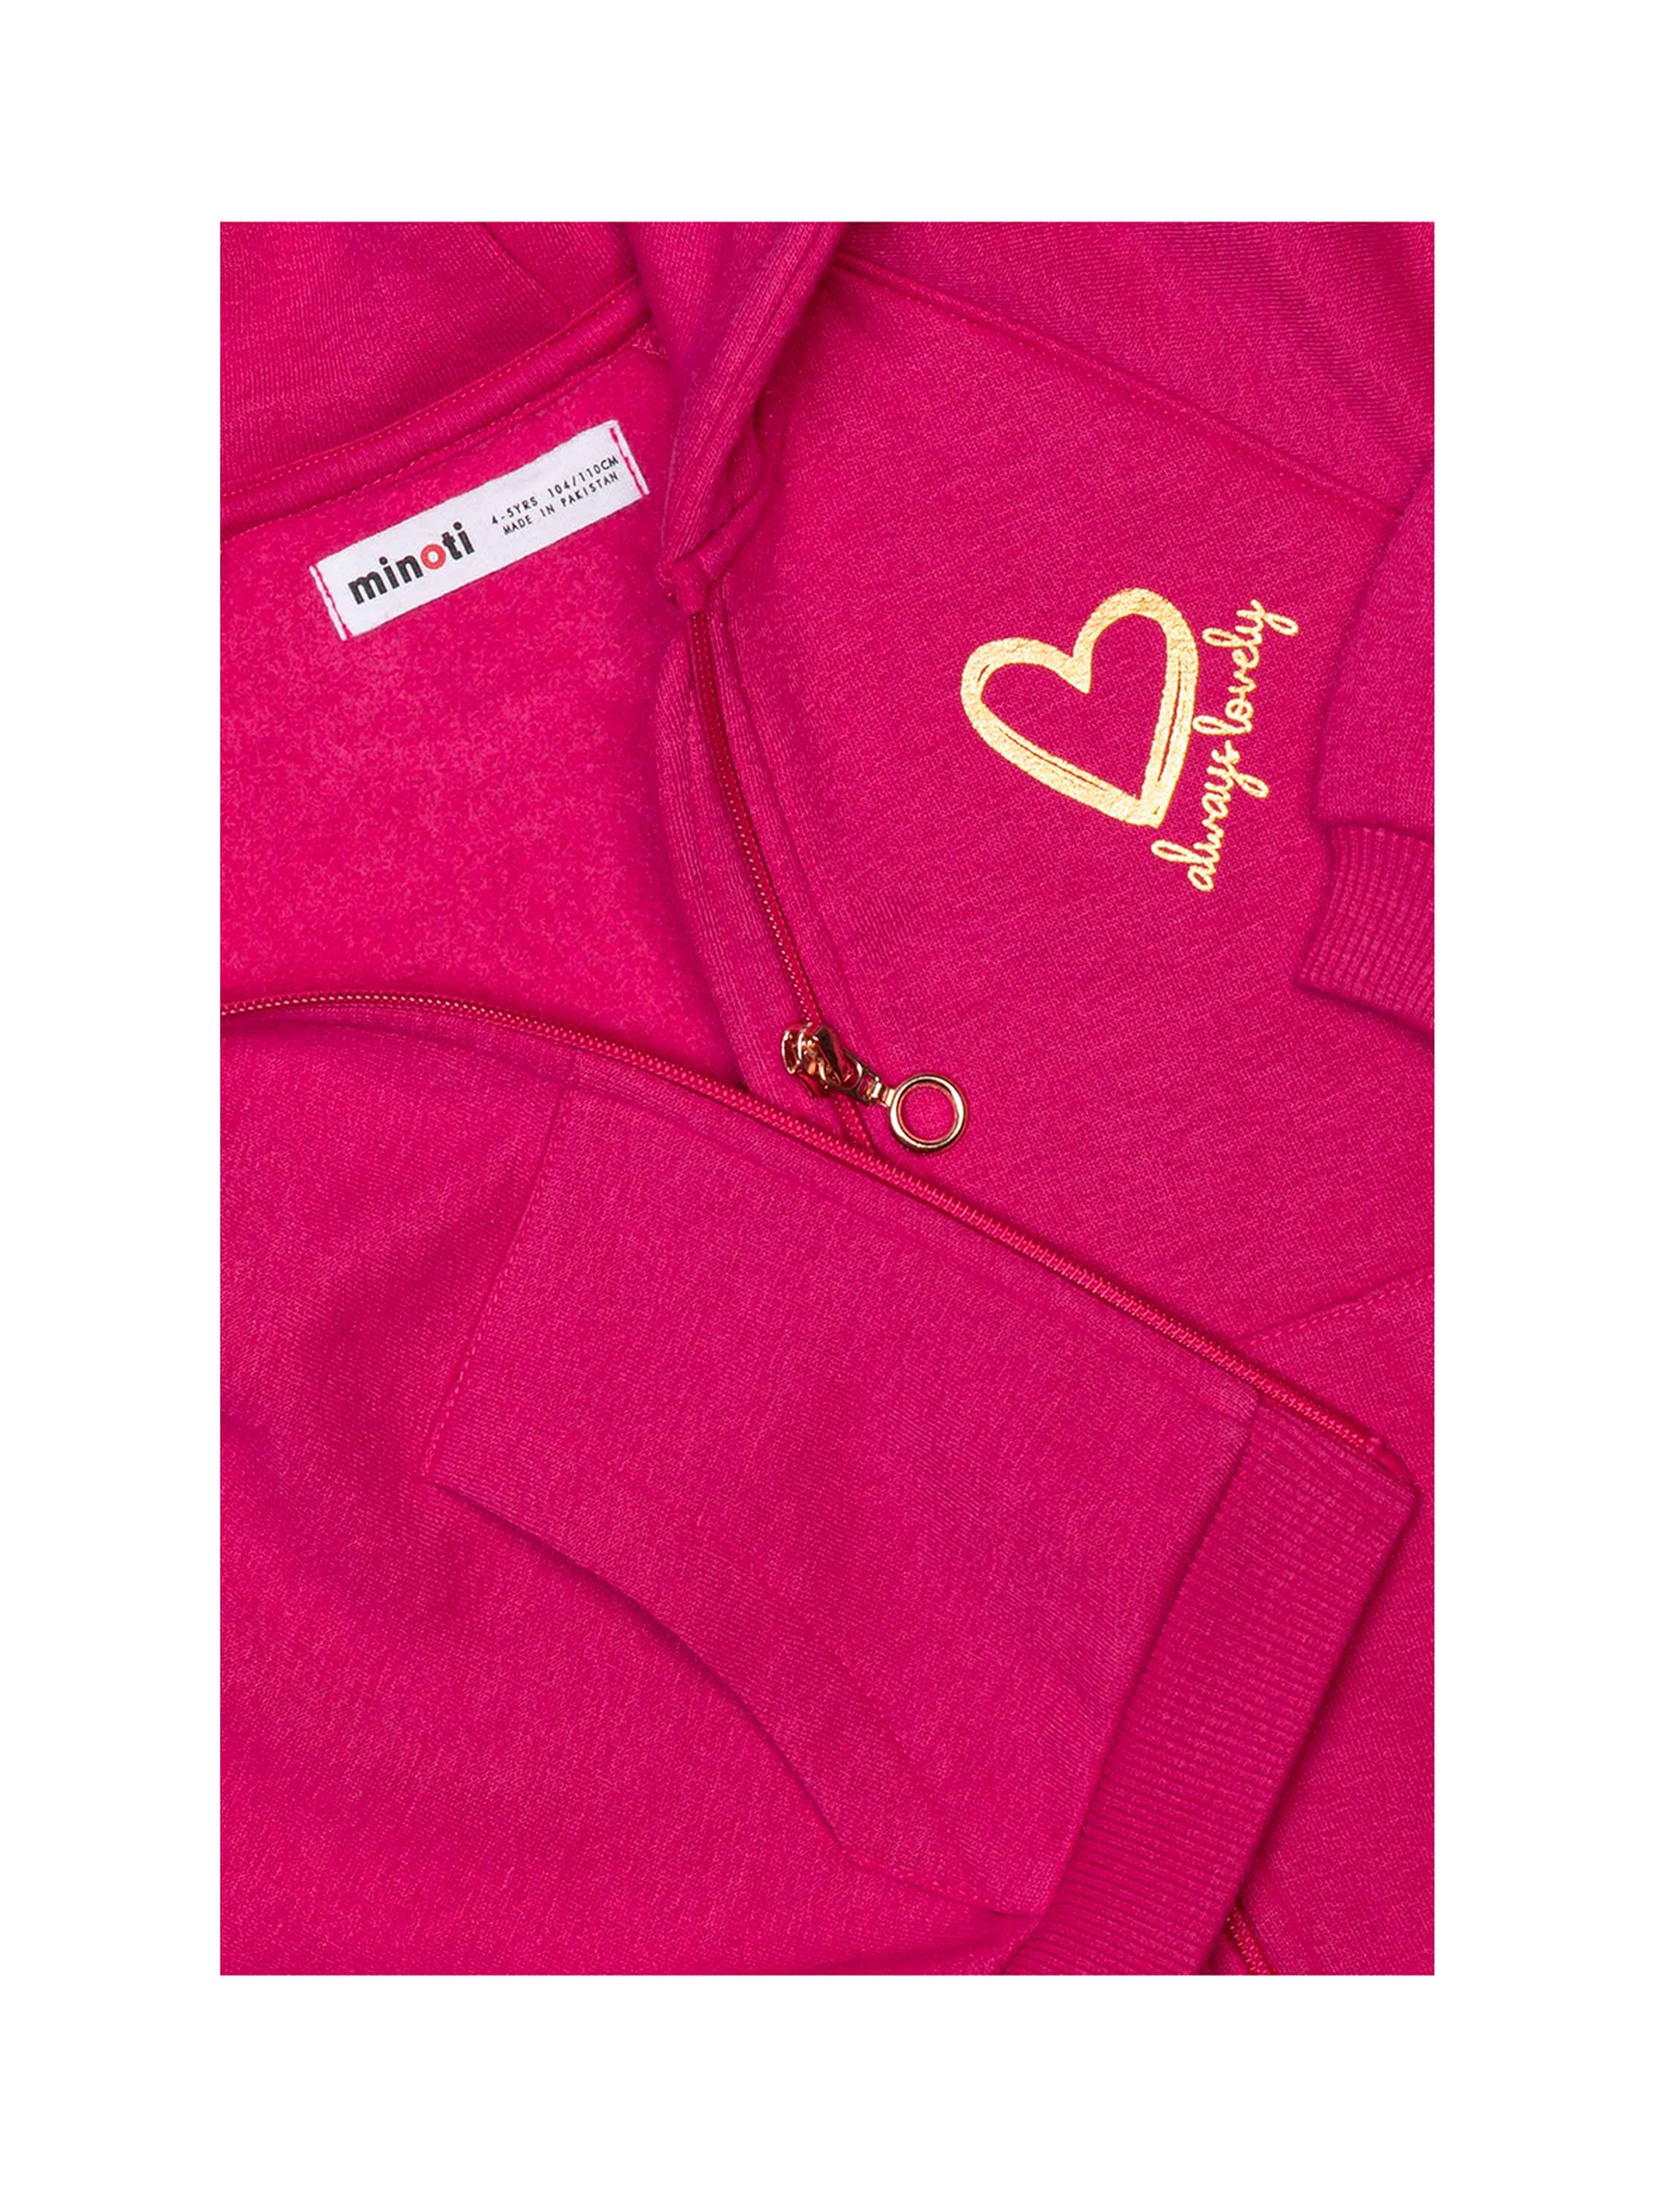 Różowa bluza dla dziewczynki z kapturem